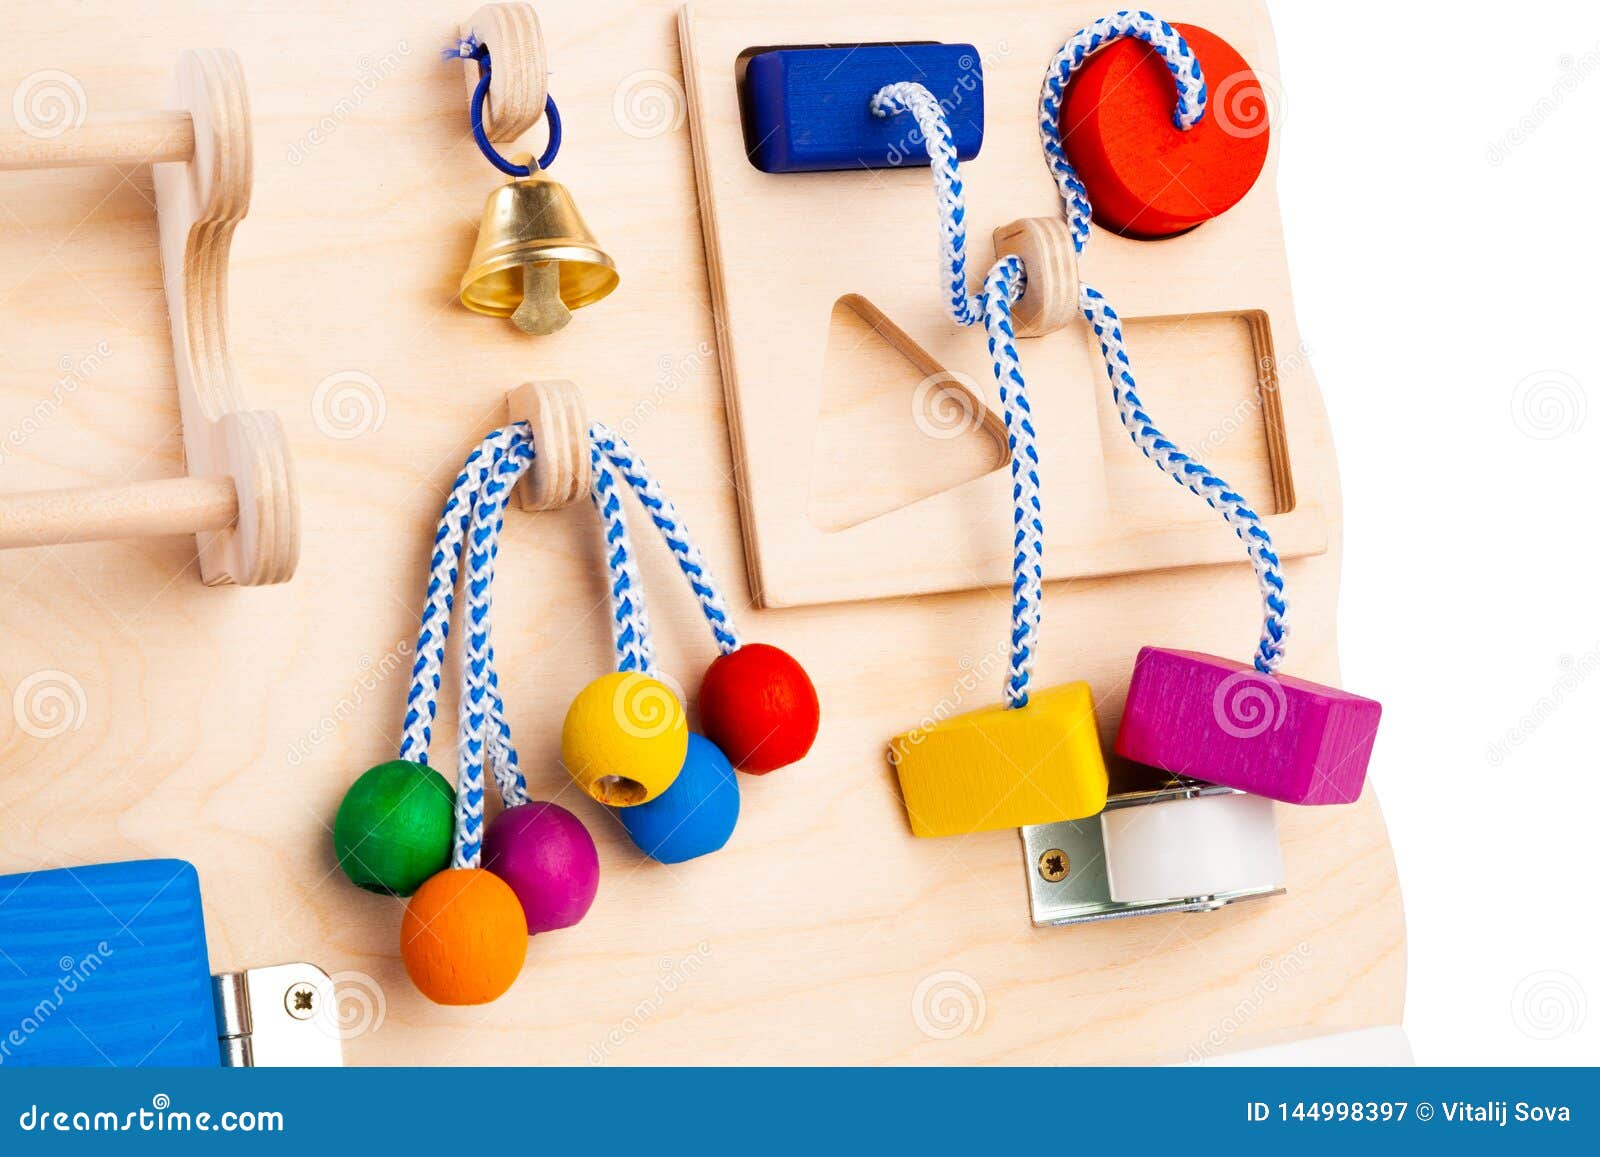 Houten Speelgoed Voor Jonge Geitjes Stock Afbeelding - Image of bezig, activiteit: 144998397